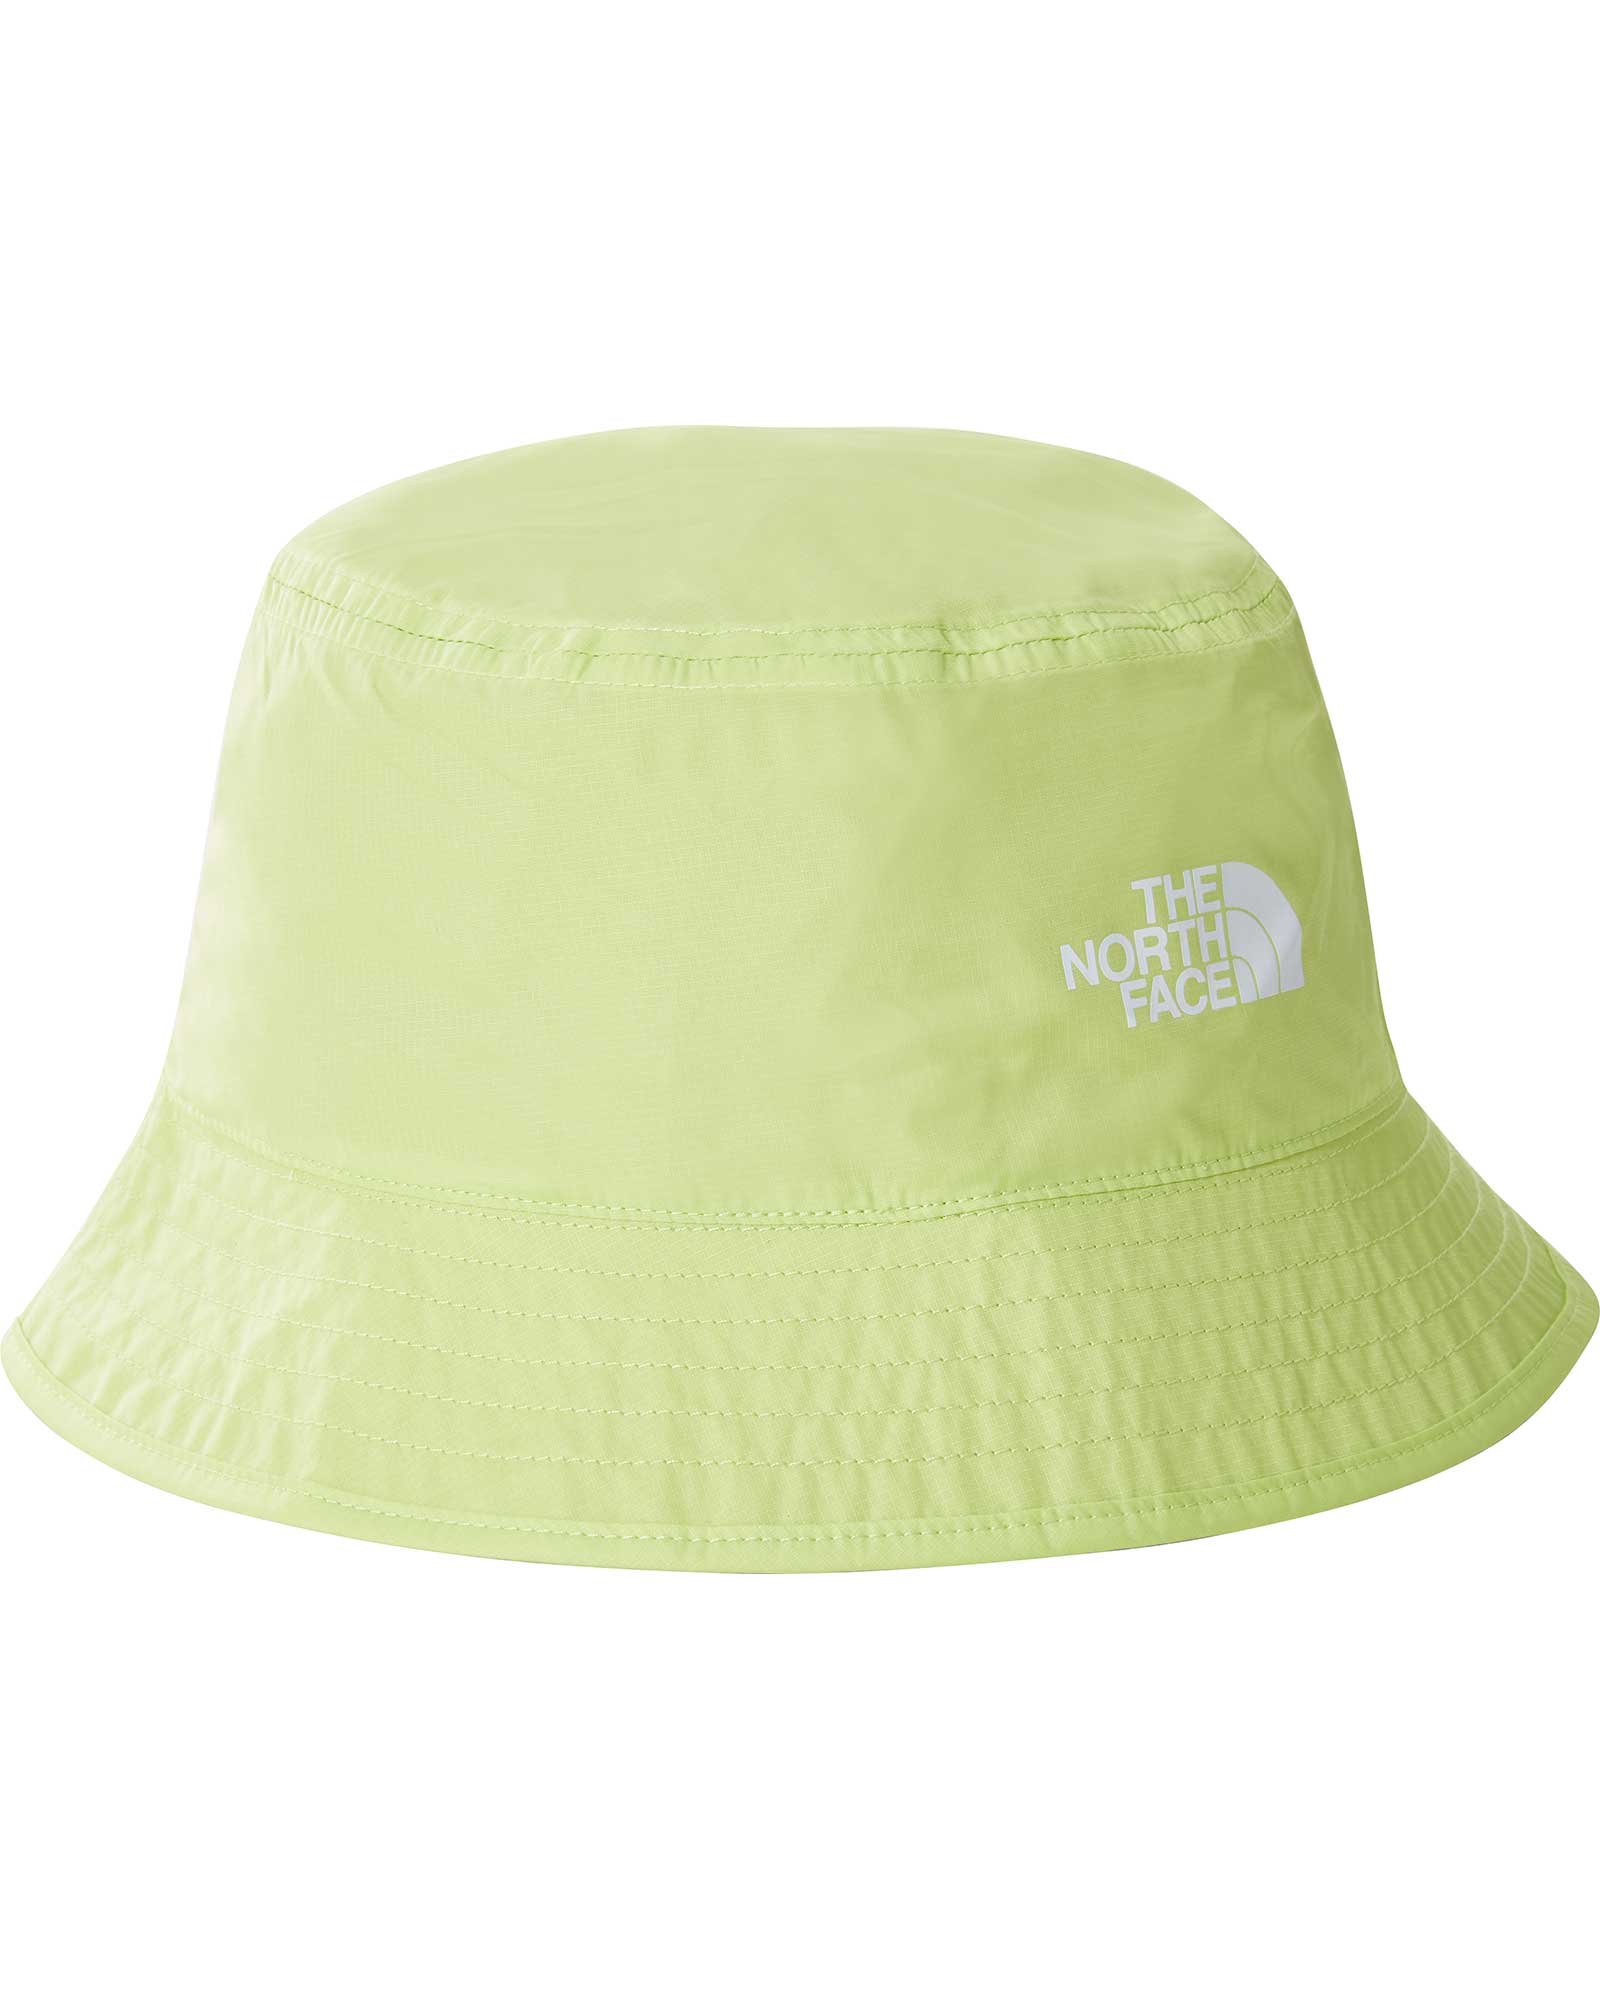 The North Face Sun Stash Bucket Hat - Sharp Green L/XL